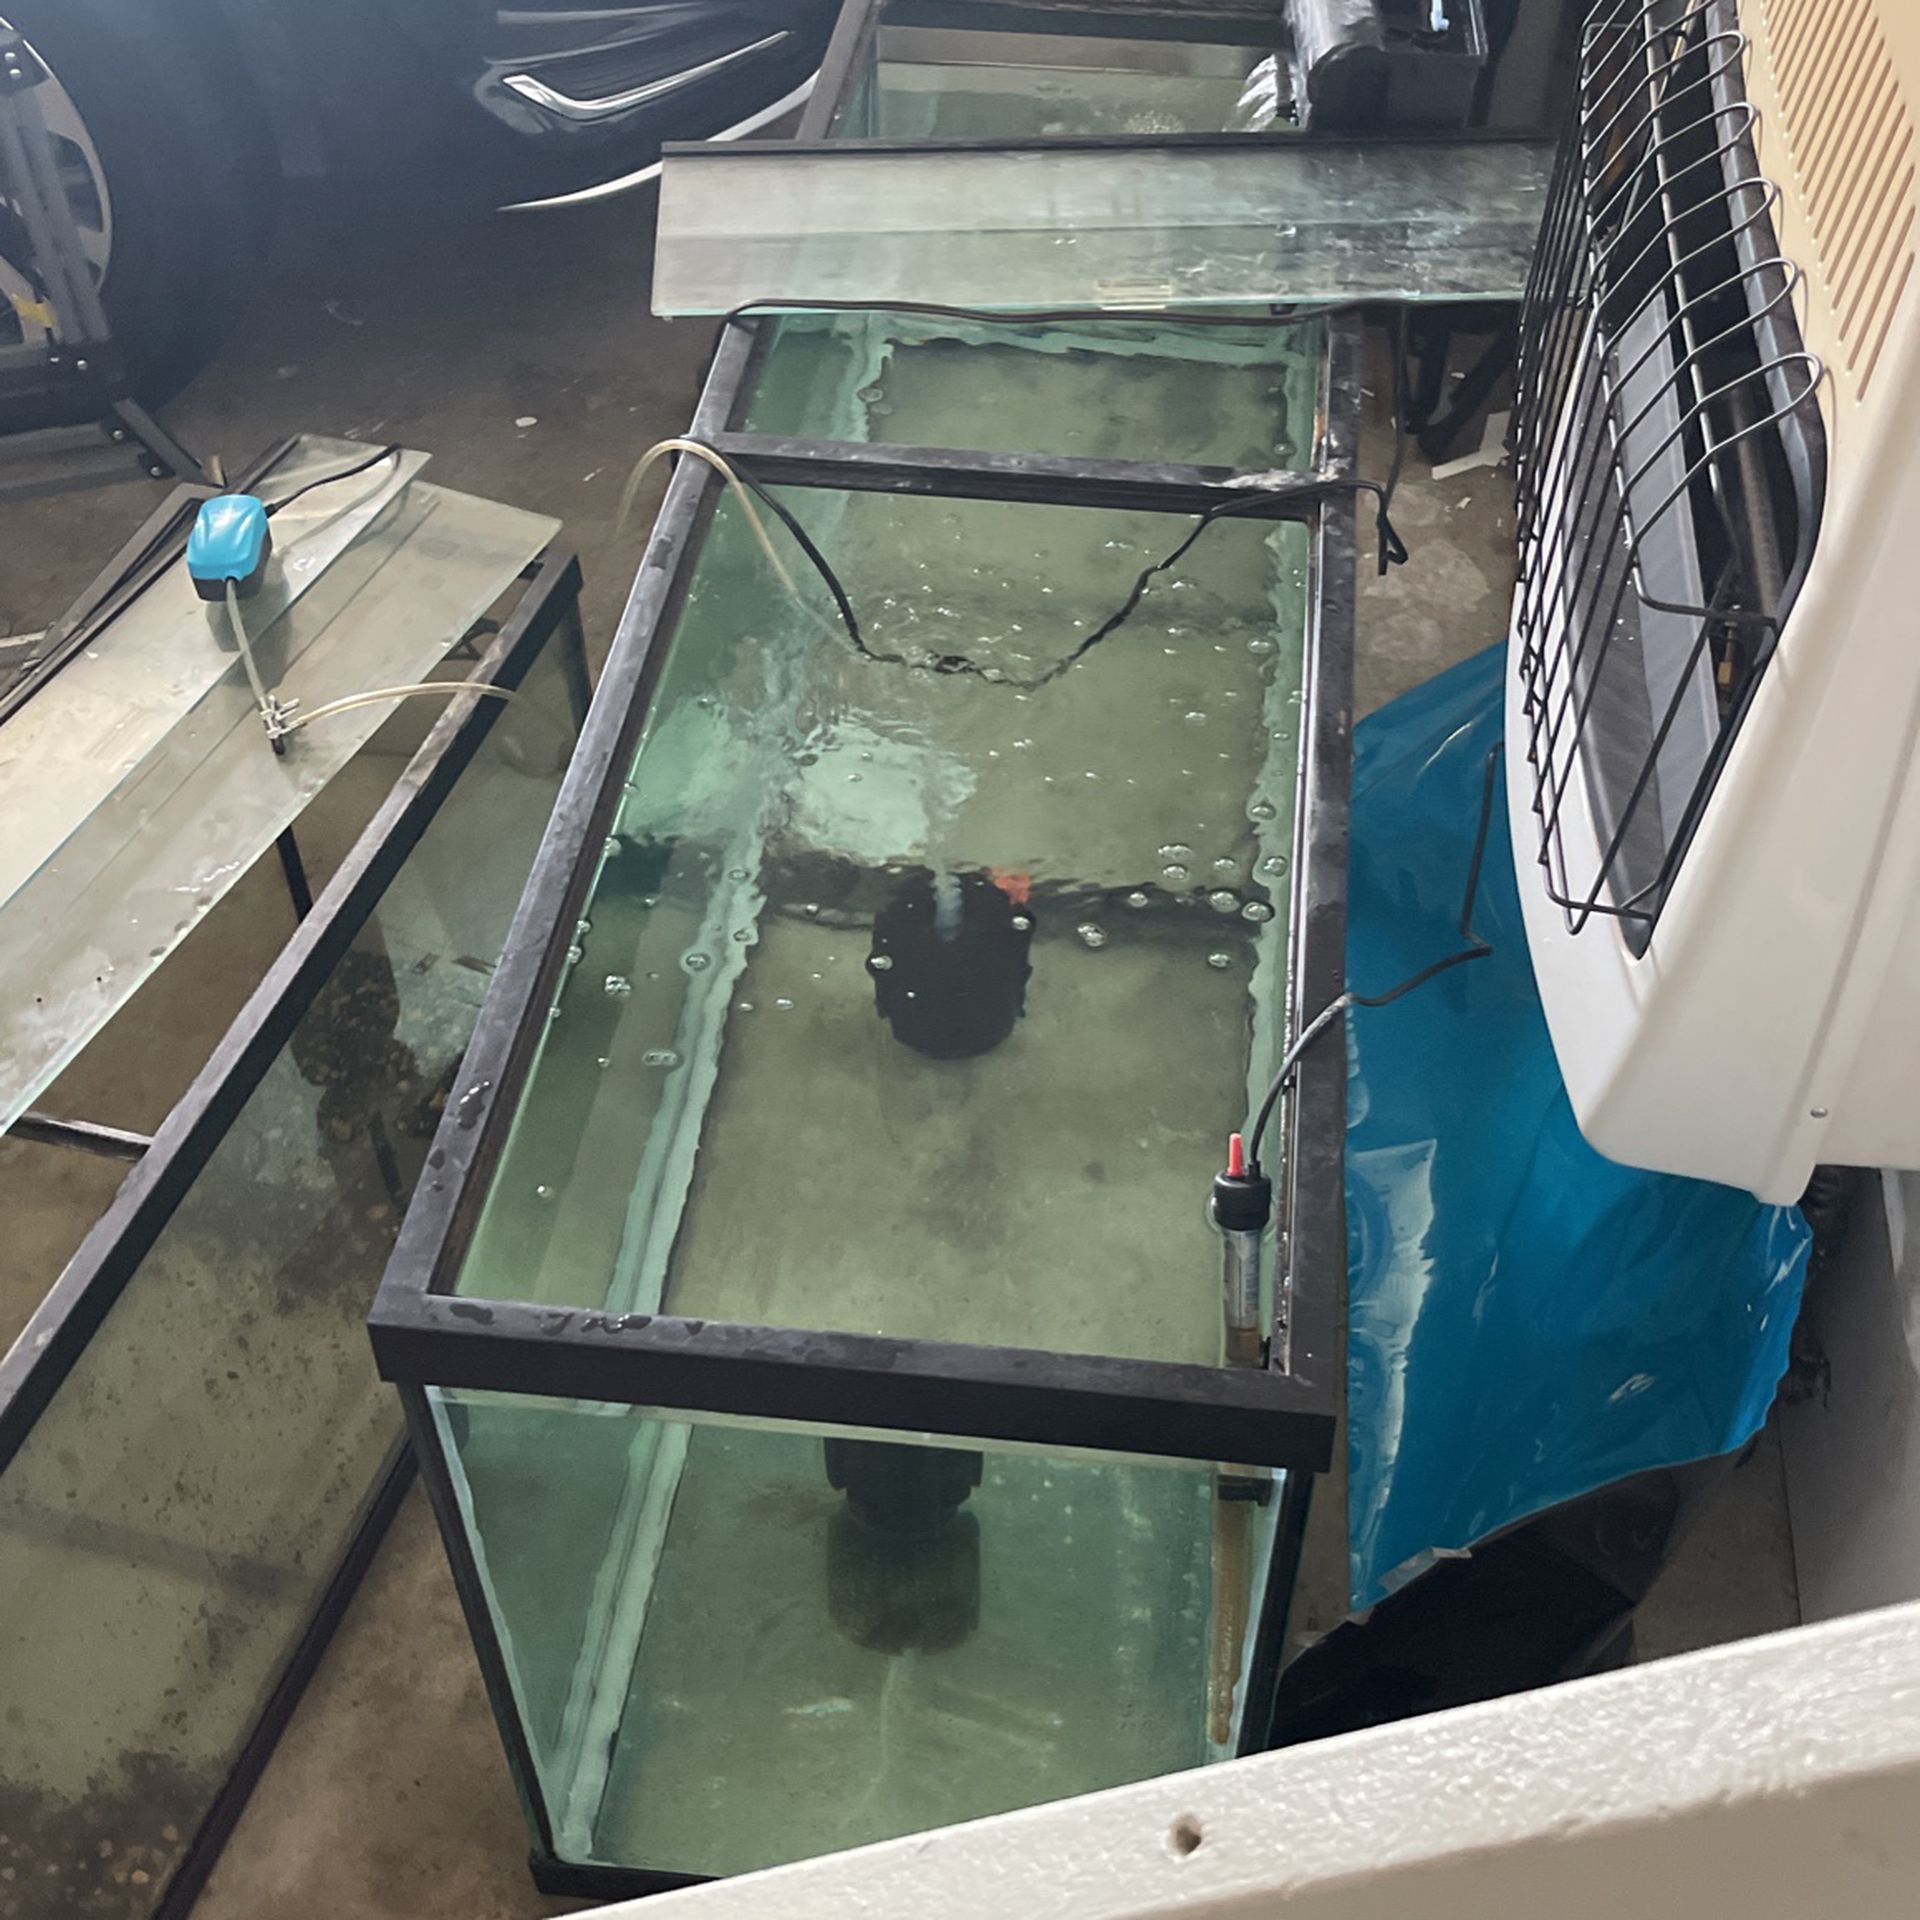 Aquarium supplies, filters, tanks